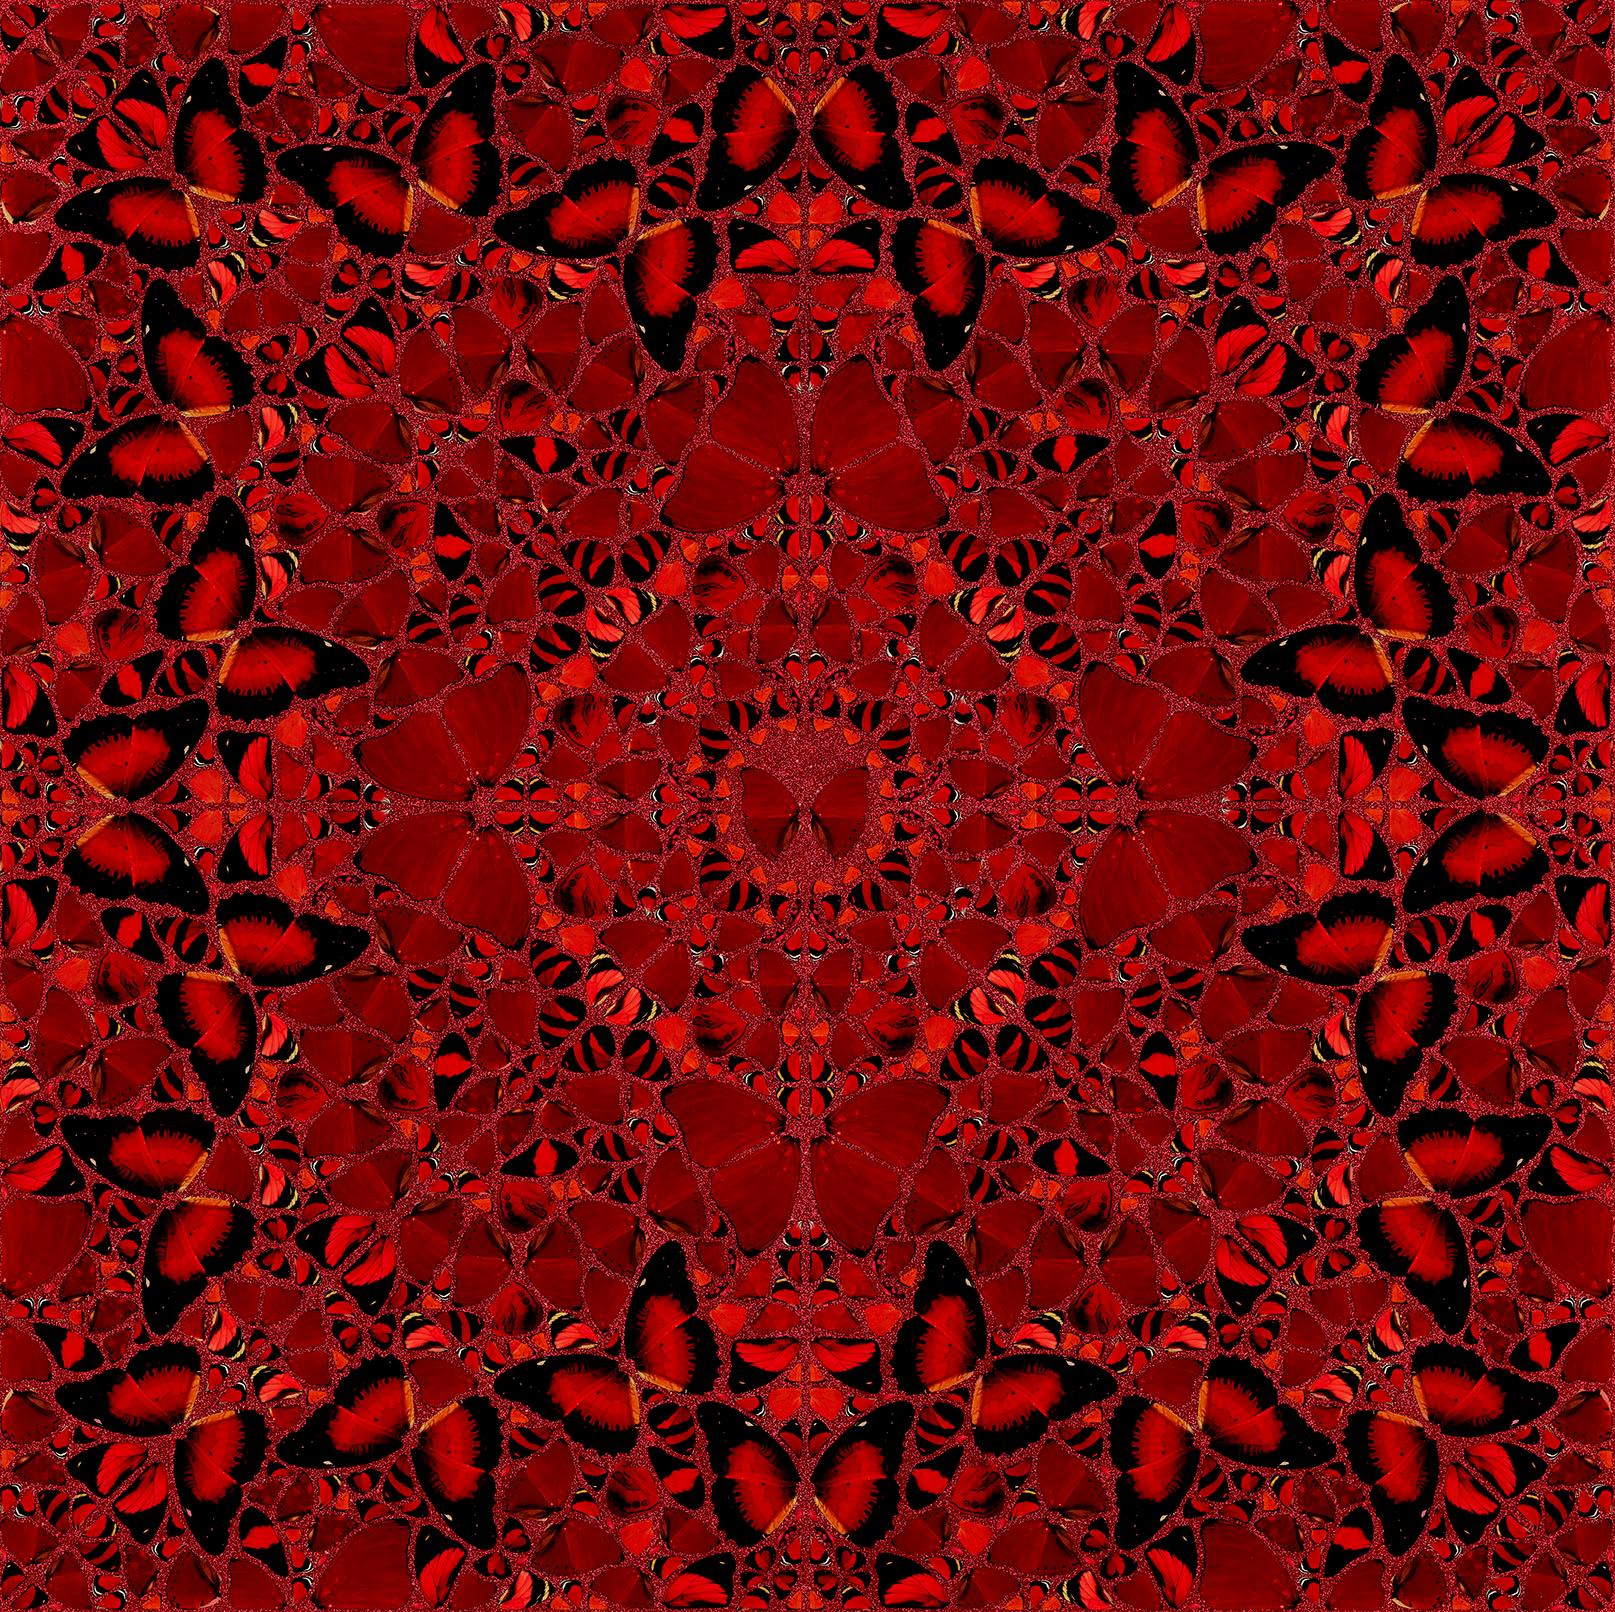 Figurative Print Damien Hirst - DAMIEN HIRST - EMPRESSES : NŪR JAHĀN - Édition limitée. Papillons pailletés rouges